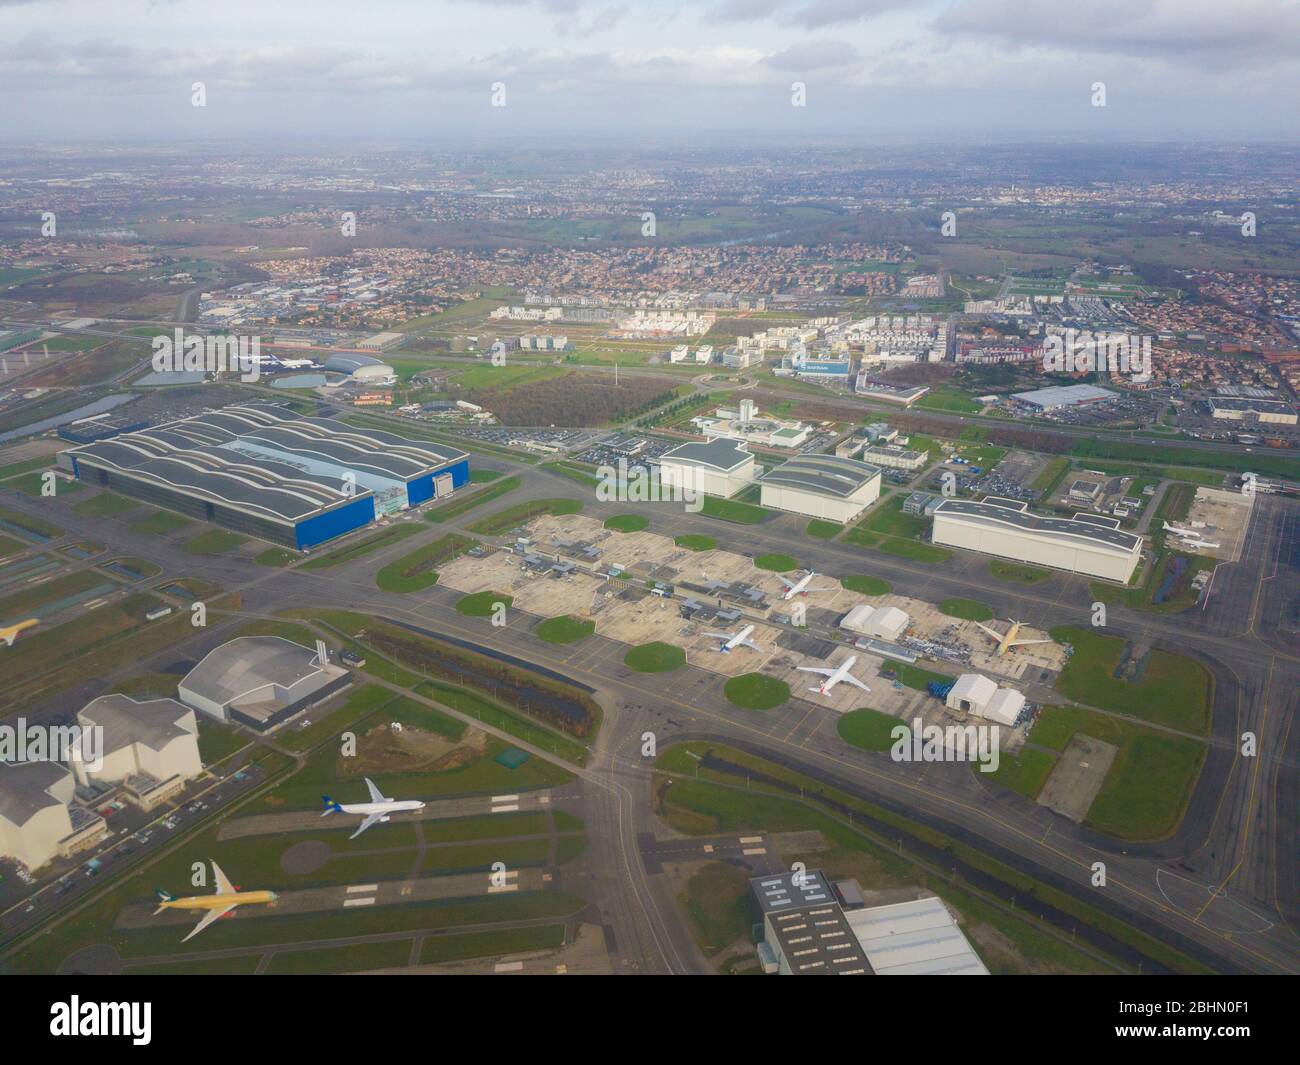 Francia, Haute-Garonne (31), Blagnac, Aeropuerto Toulouse-Blagnac, ZAC Aeroconstelation que alberga la planta de montaje de aviones Airbus (vista aérea) Foto de stock